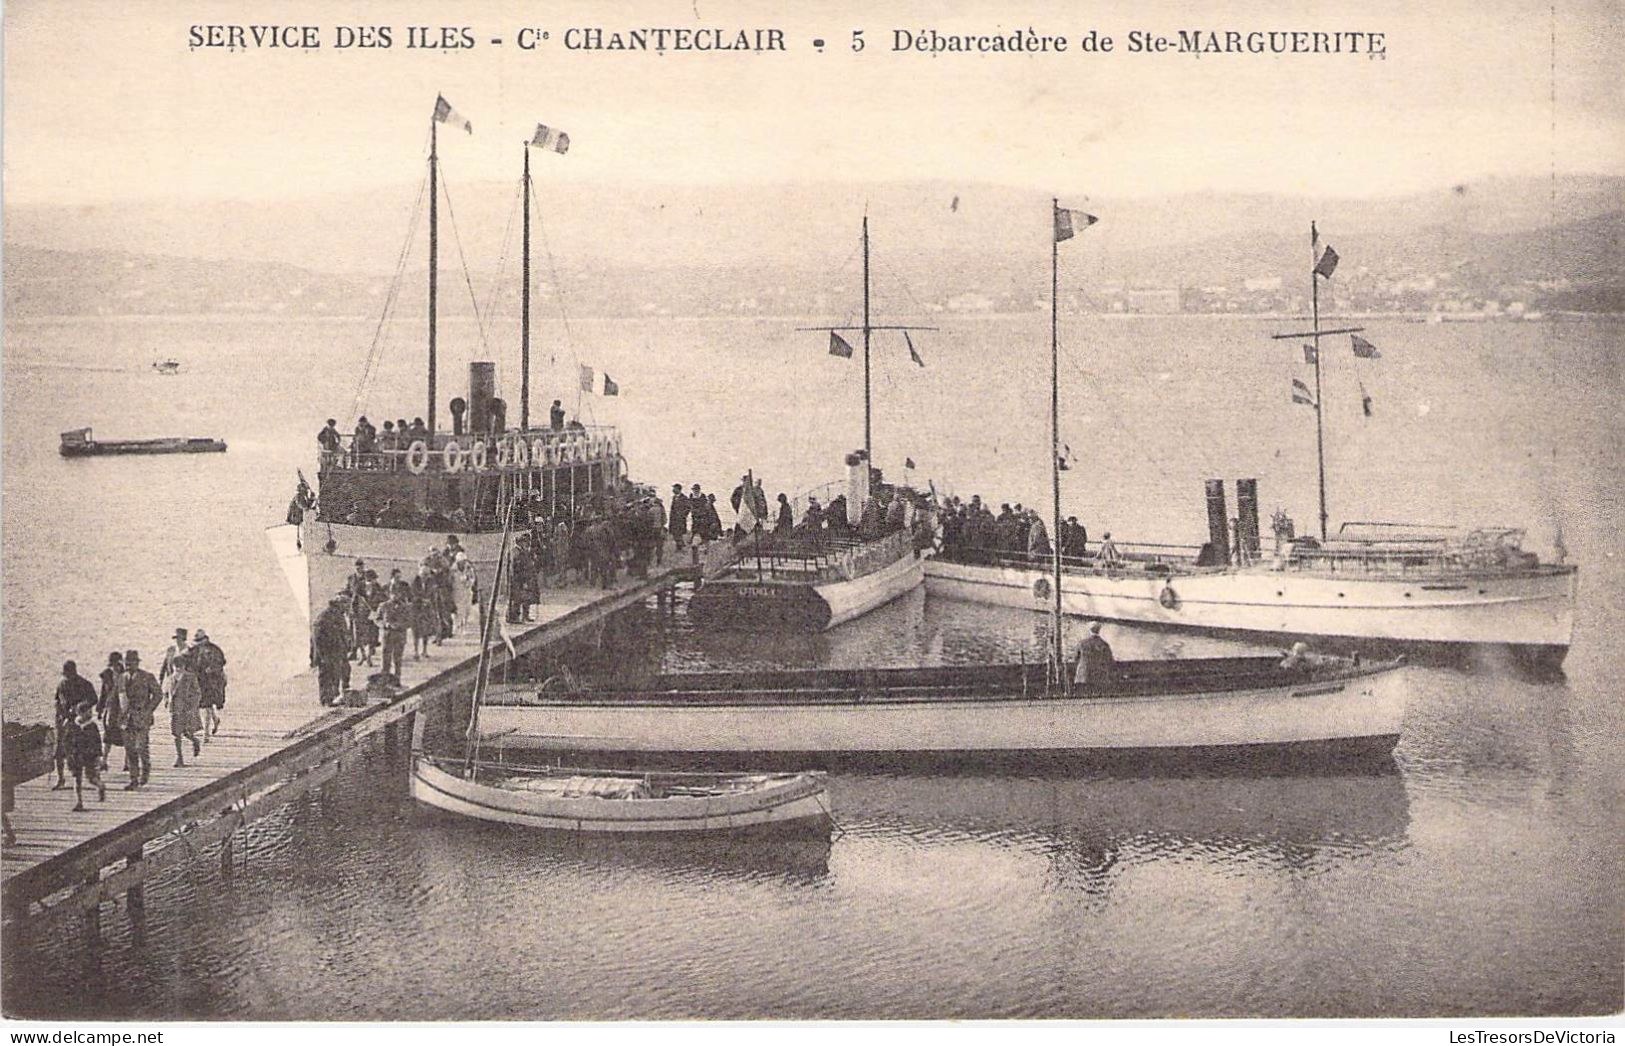 TRANSPORTS -  AEROGLISSEURS - Service Des Iles - Cie Chanteclair - Débarcadère Ste Marguerite - Carte Postale Ancienne - Hovercrafts